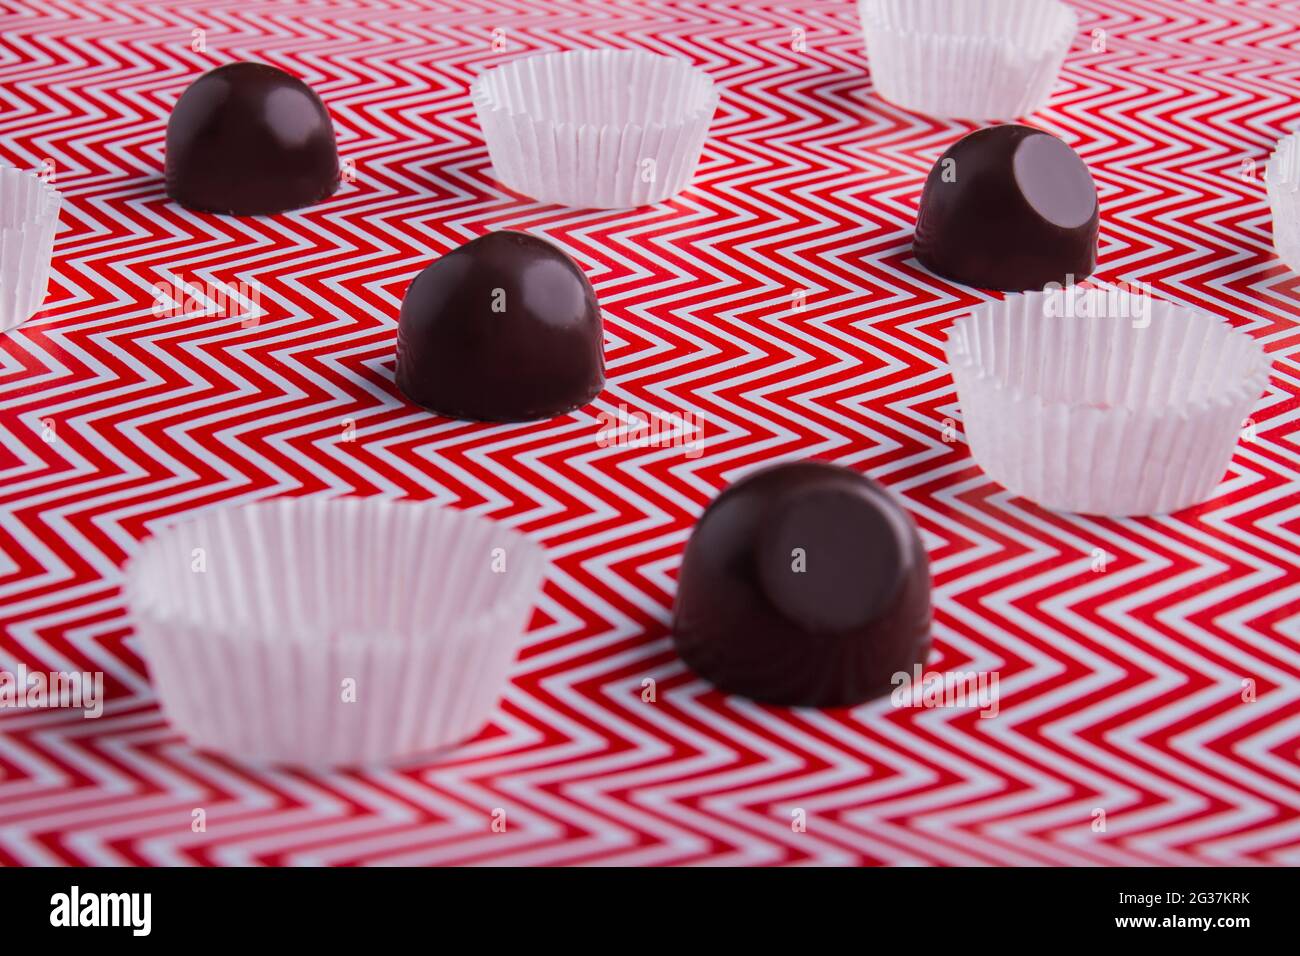 Nahaufnahme von Schokoladen-Bonbons mit Wraps auf rot-weißem Hintergrund. Stockfoto